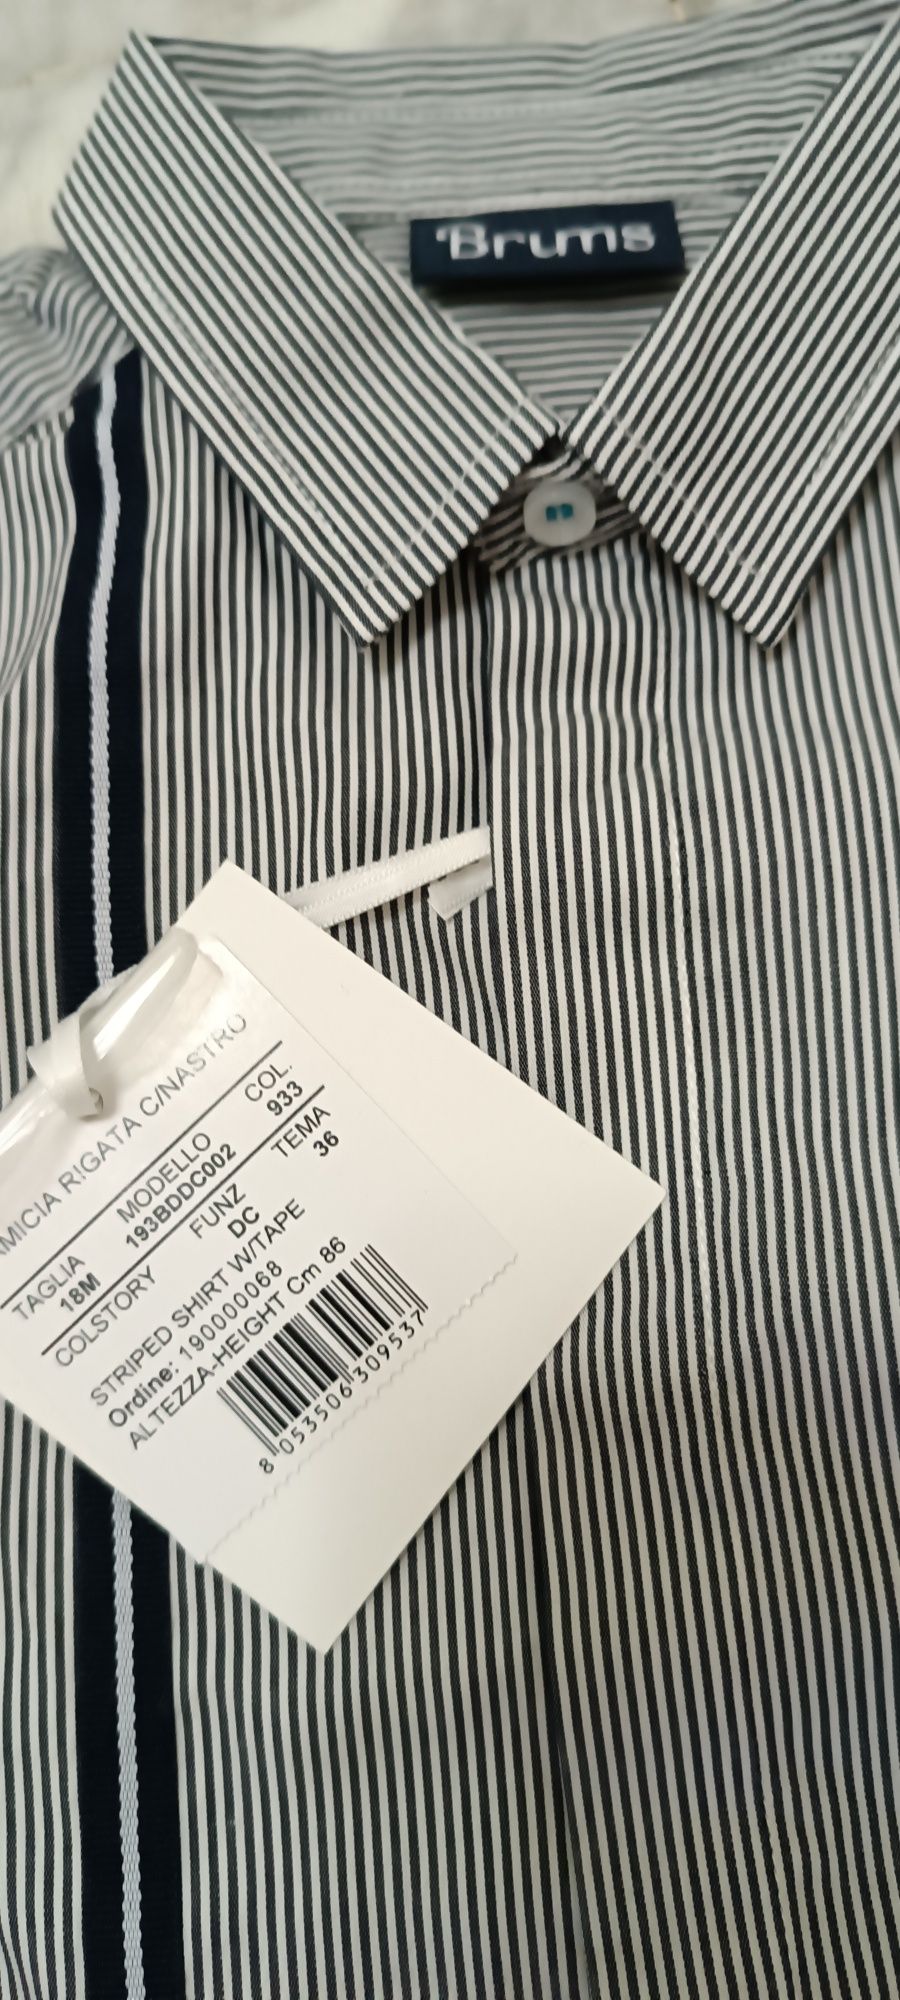 Комплект набор Brums рубашка штаны Италия